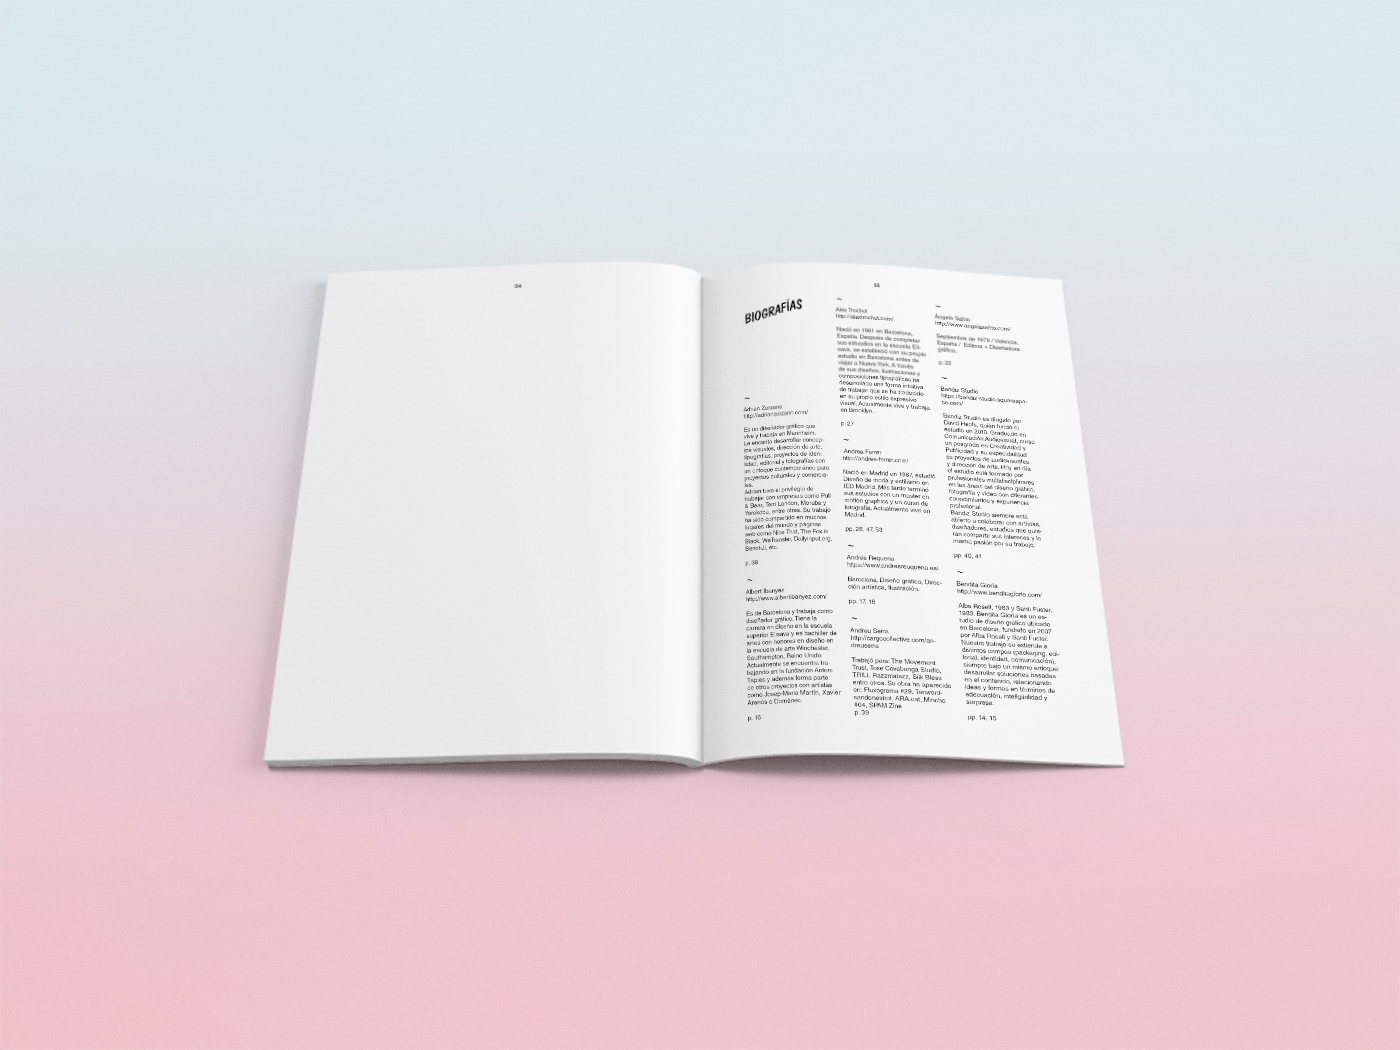 diseño gráfico Investigación new ugly libro tfg diseño editorial recursos